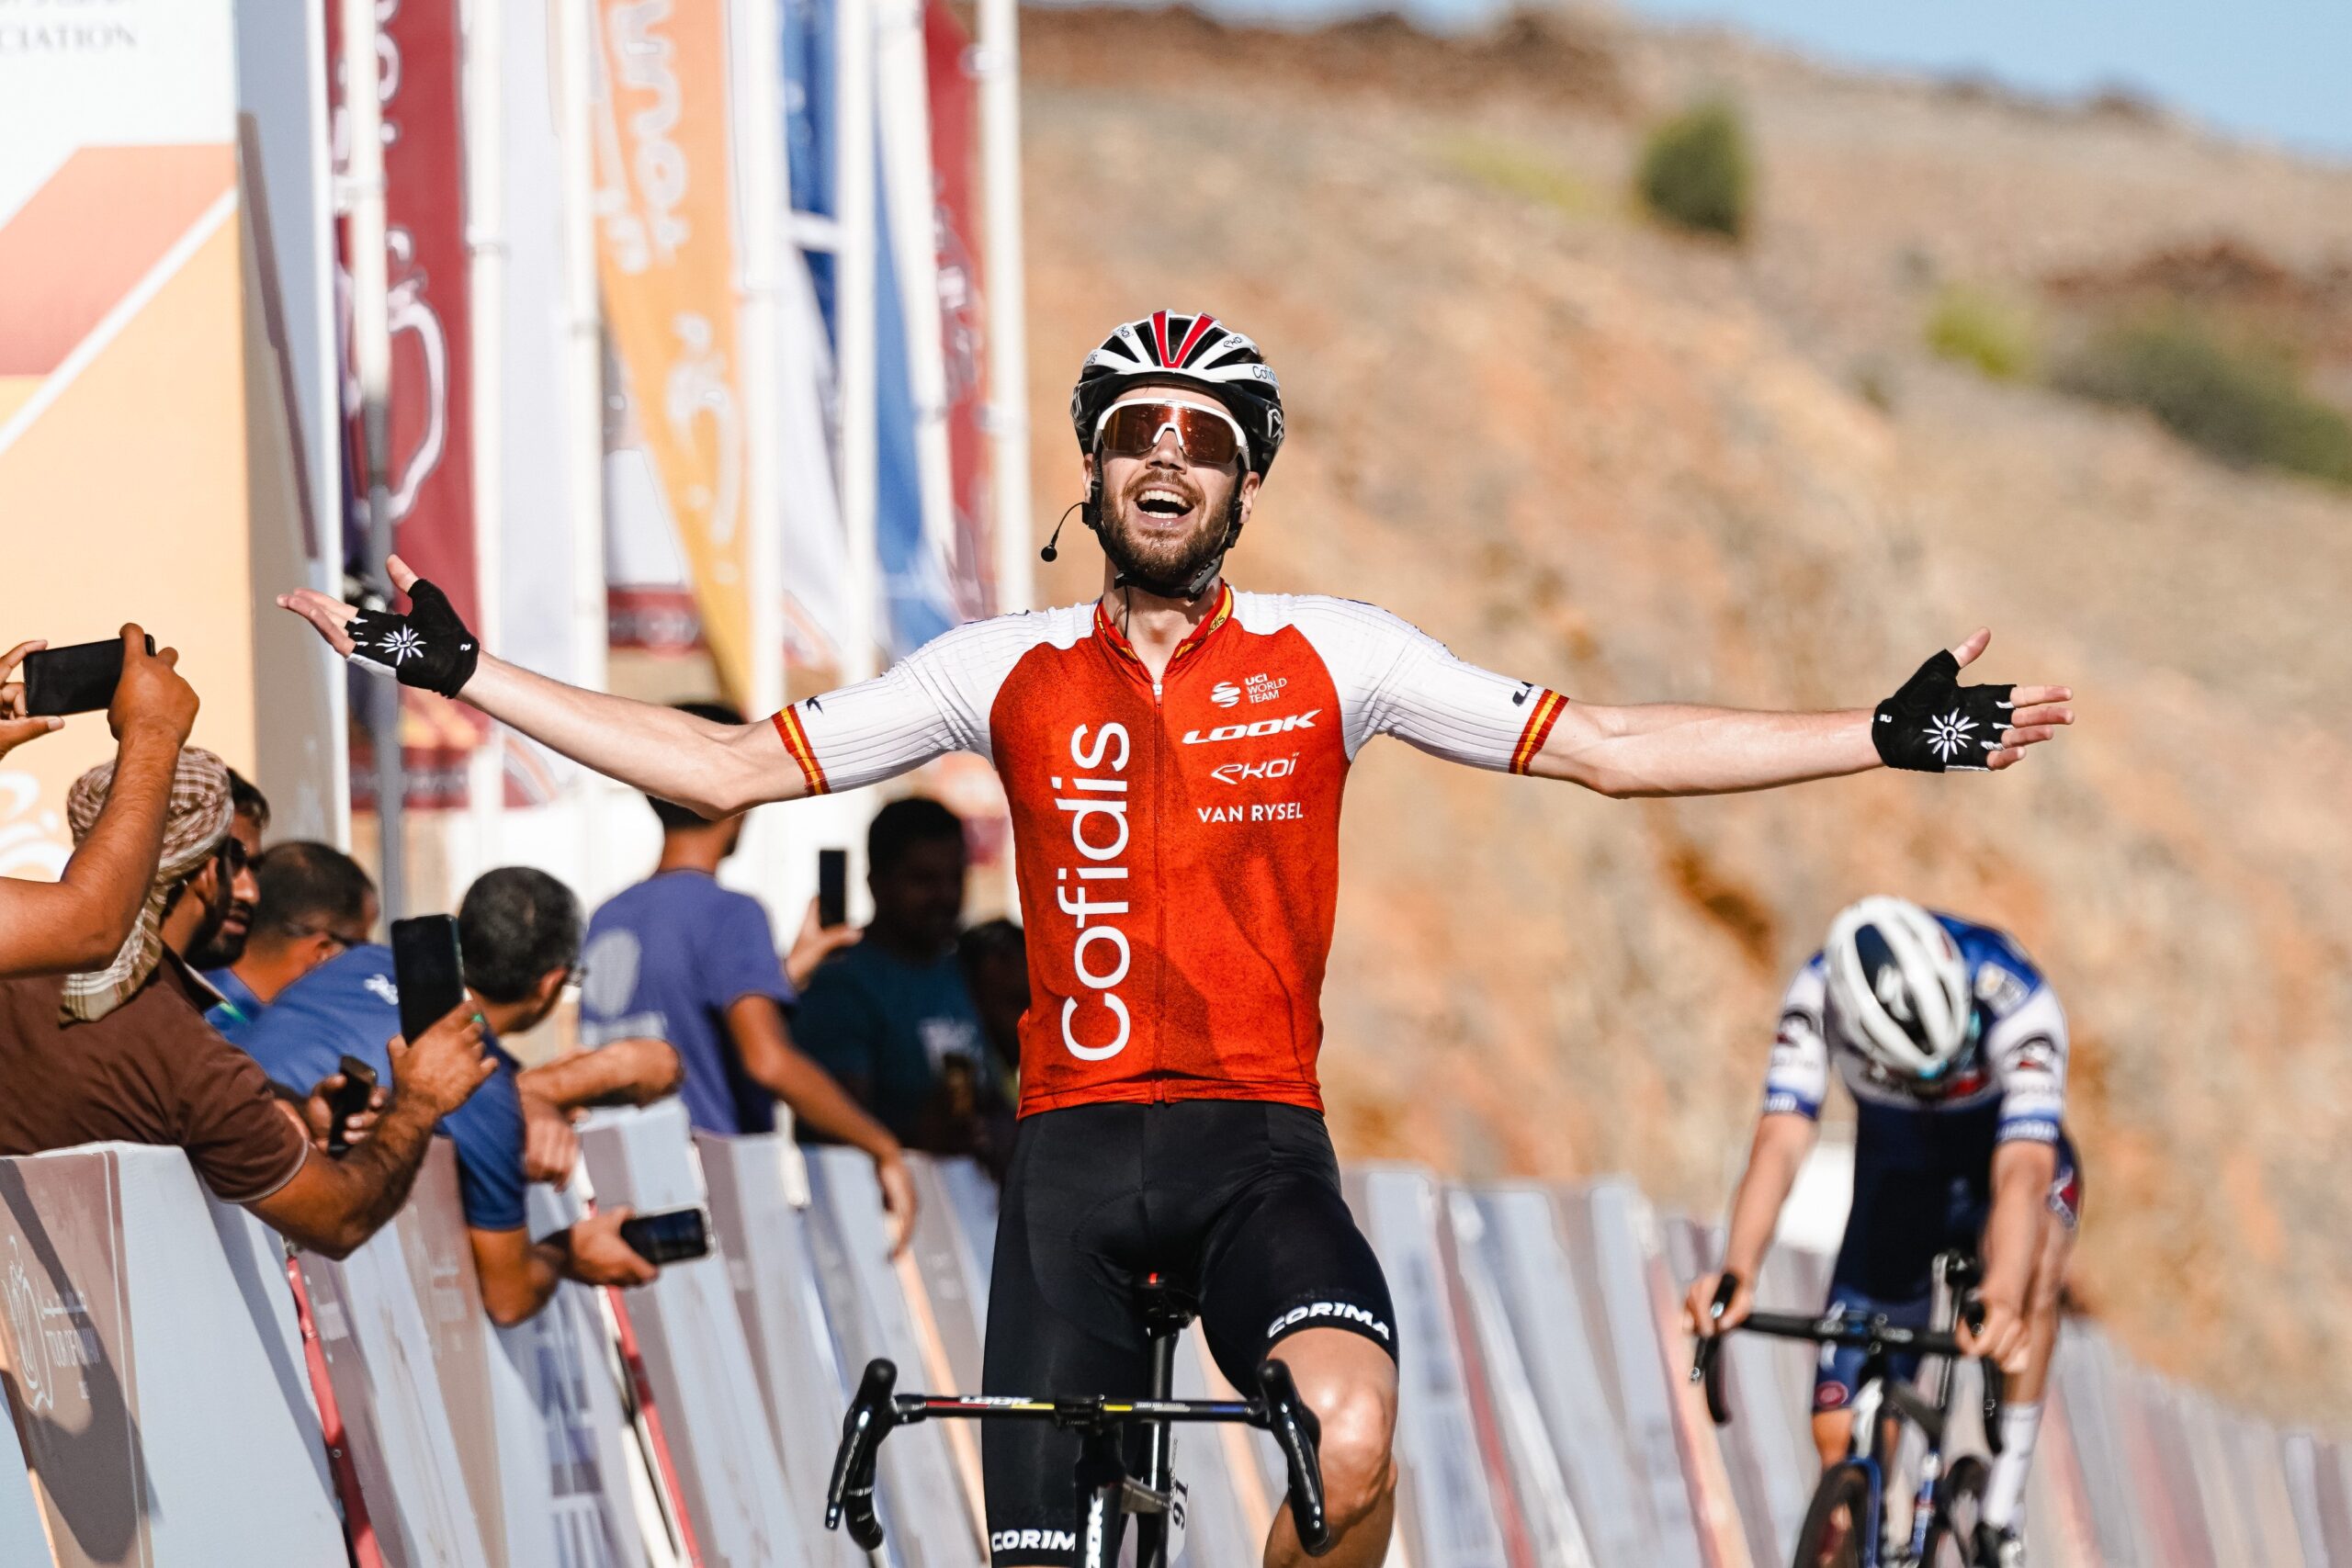 Хесус Эррада одержал победу на втором этапе «Тура Омана»